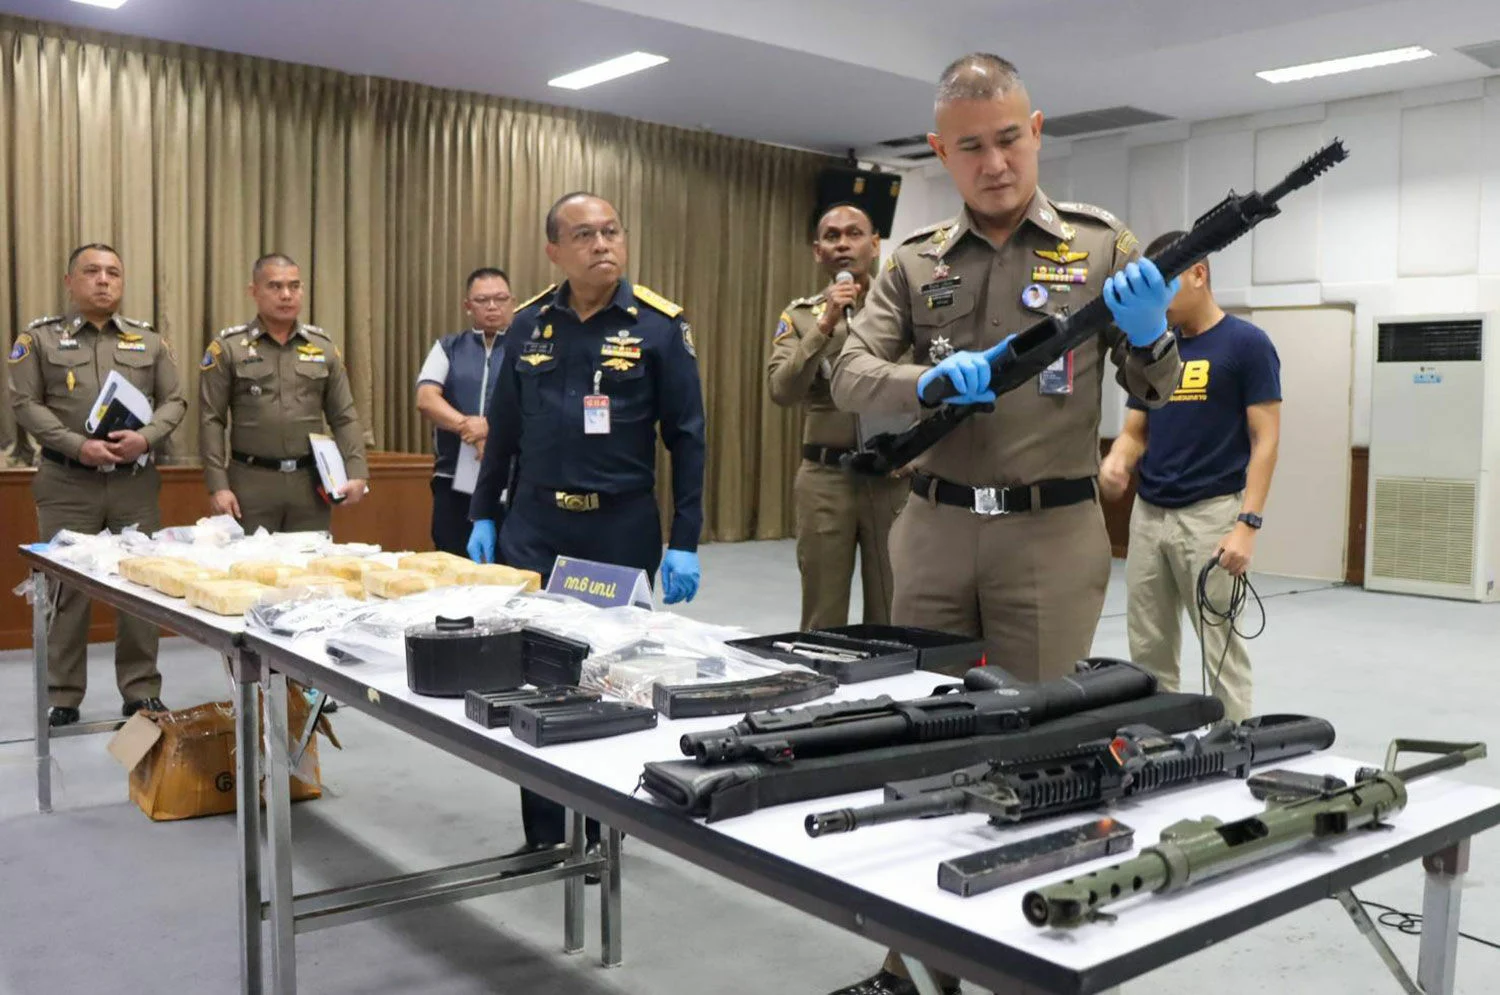 Thai Police Arrest 9, Grab 200k Meth Capsules in Thailand